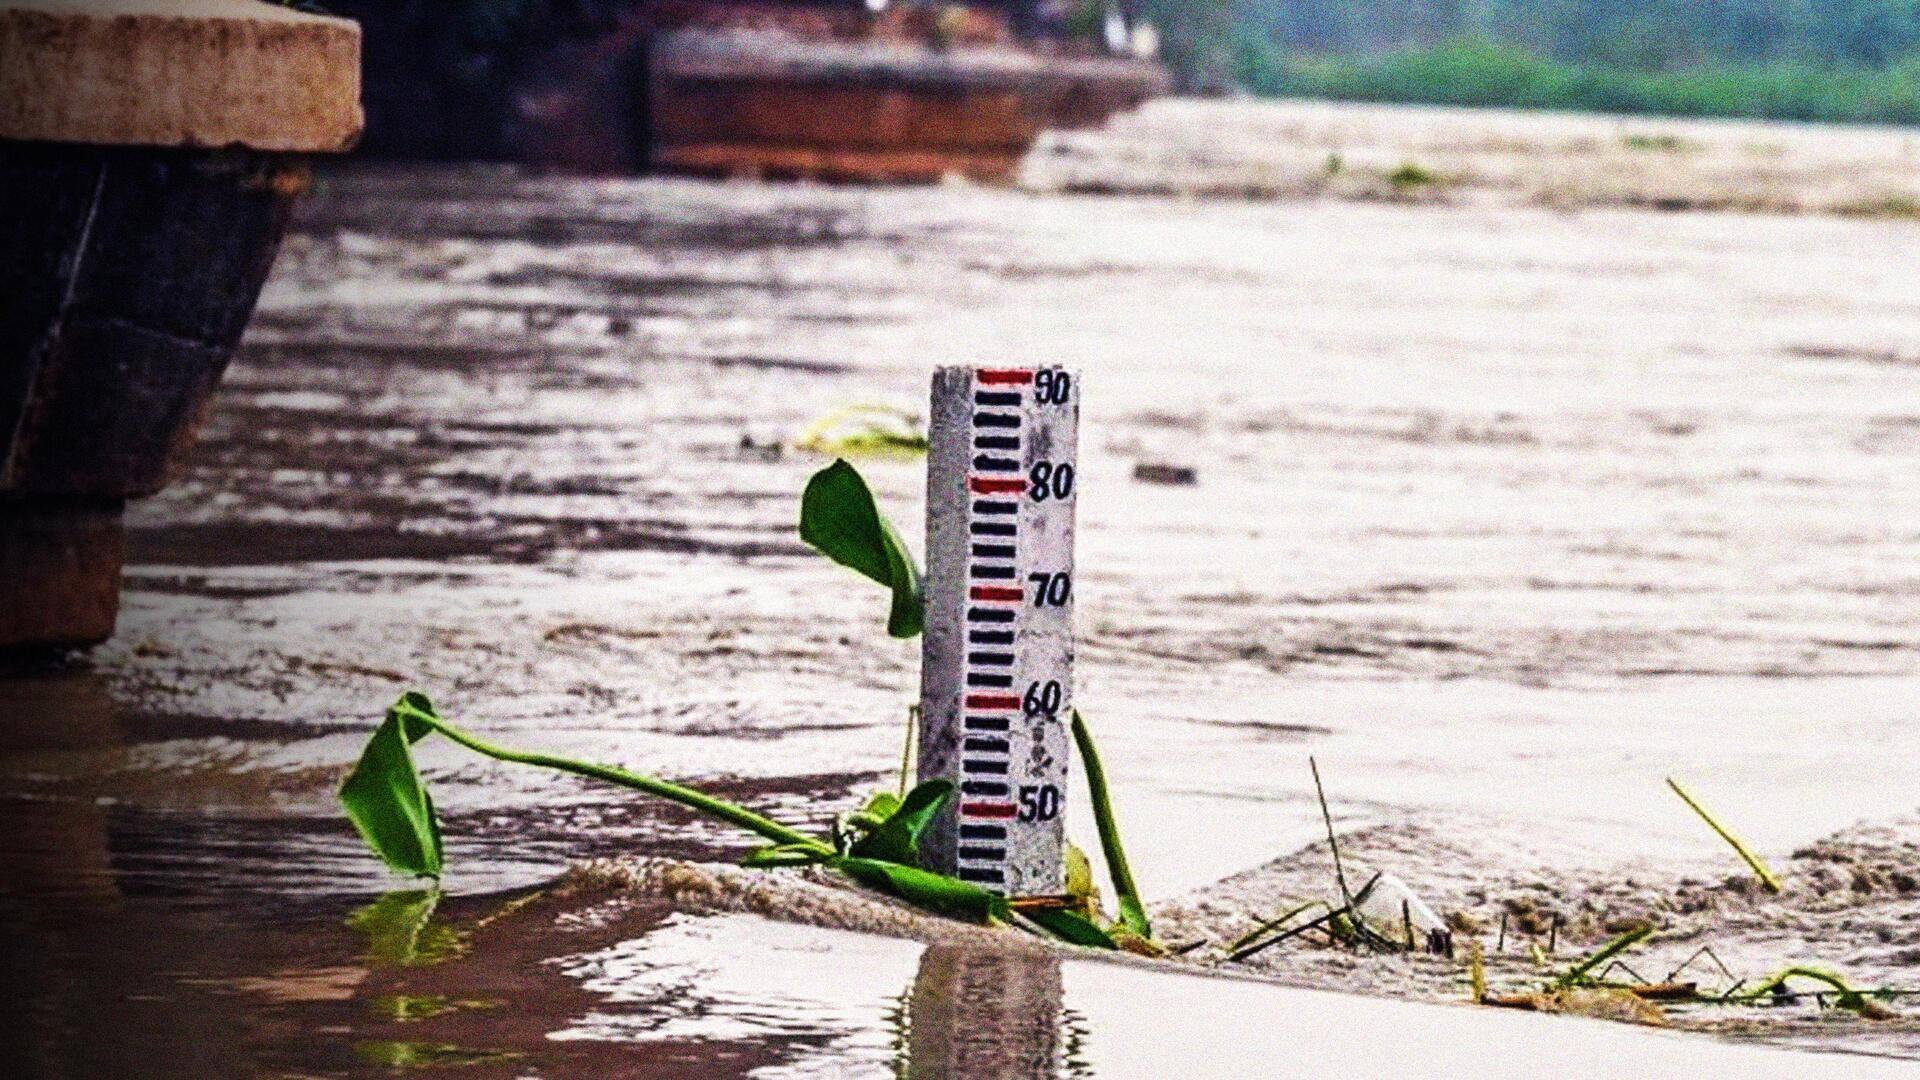 दिल्ली: यमुना का जलस्तर खतरे के निशान के पास, बारिश से दोबारा बढ़ने की आशंका